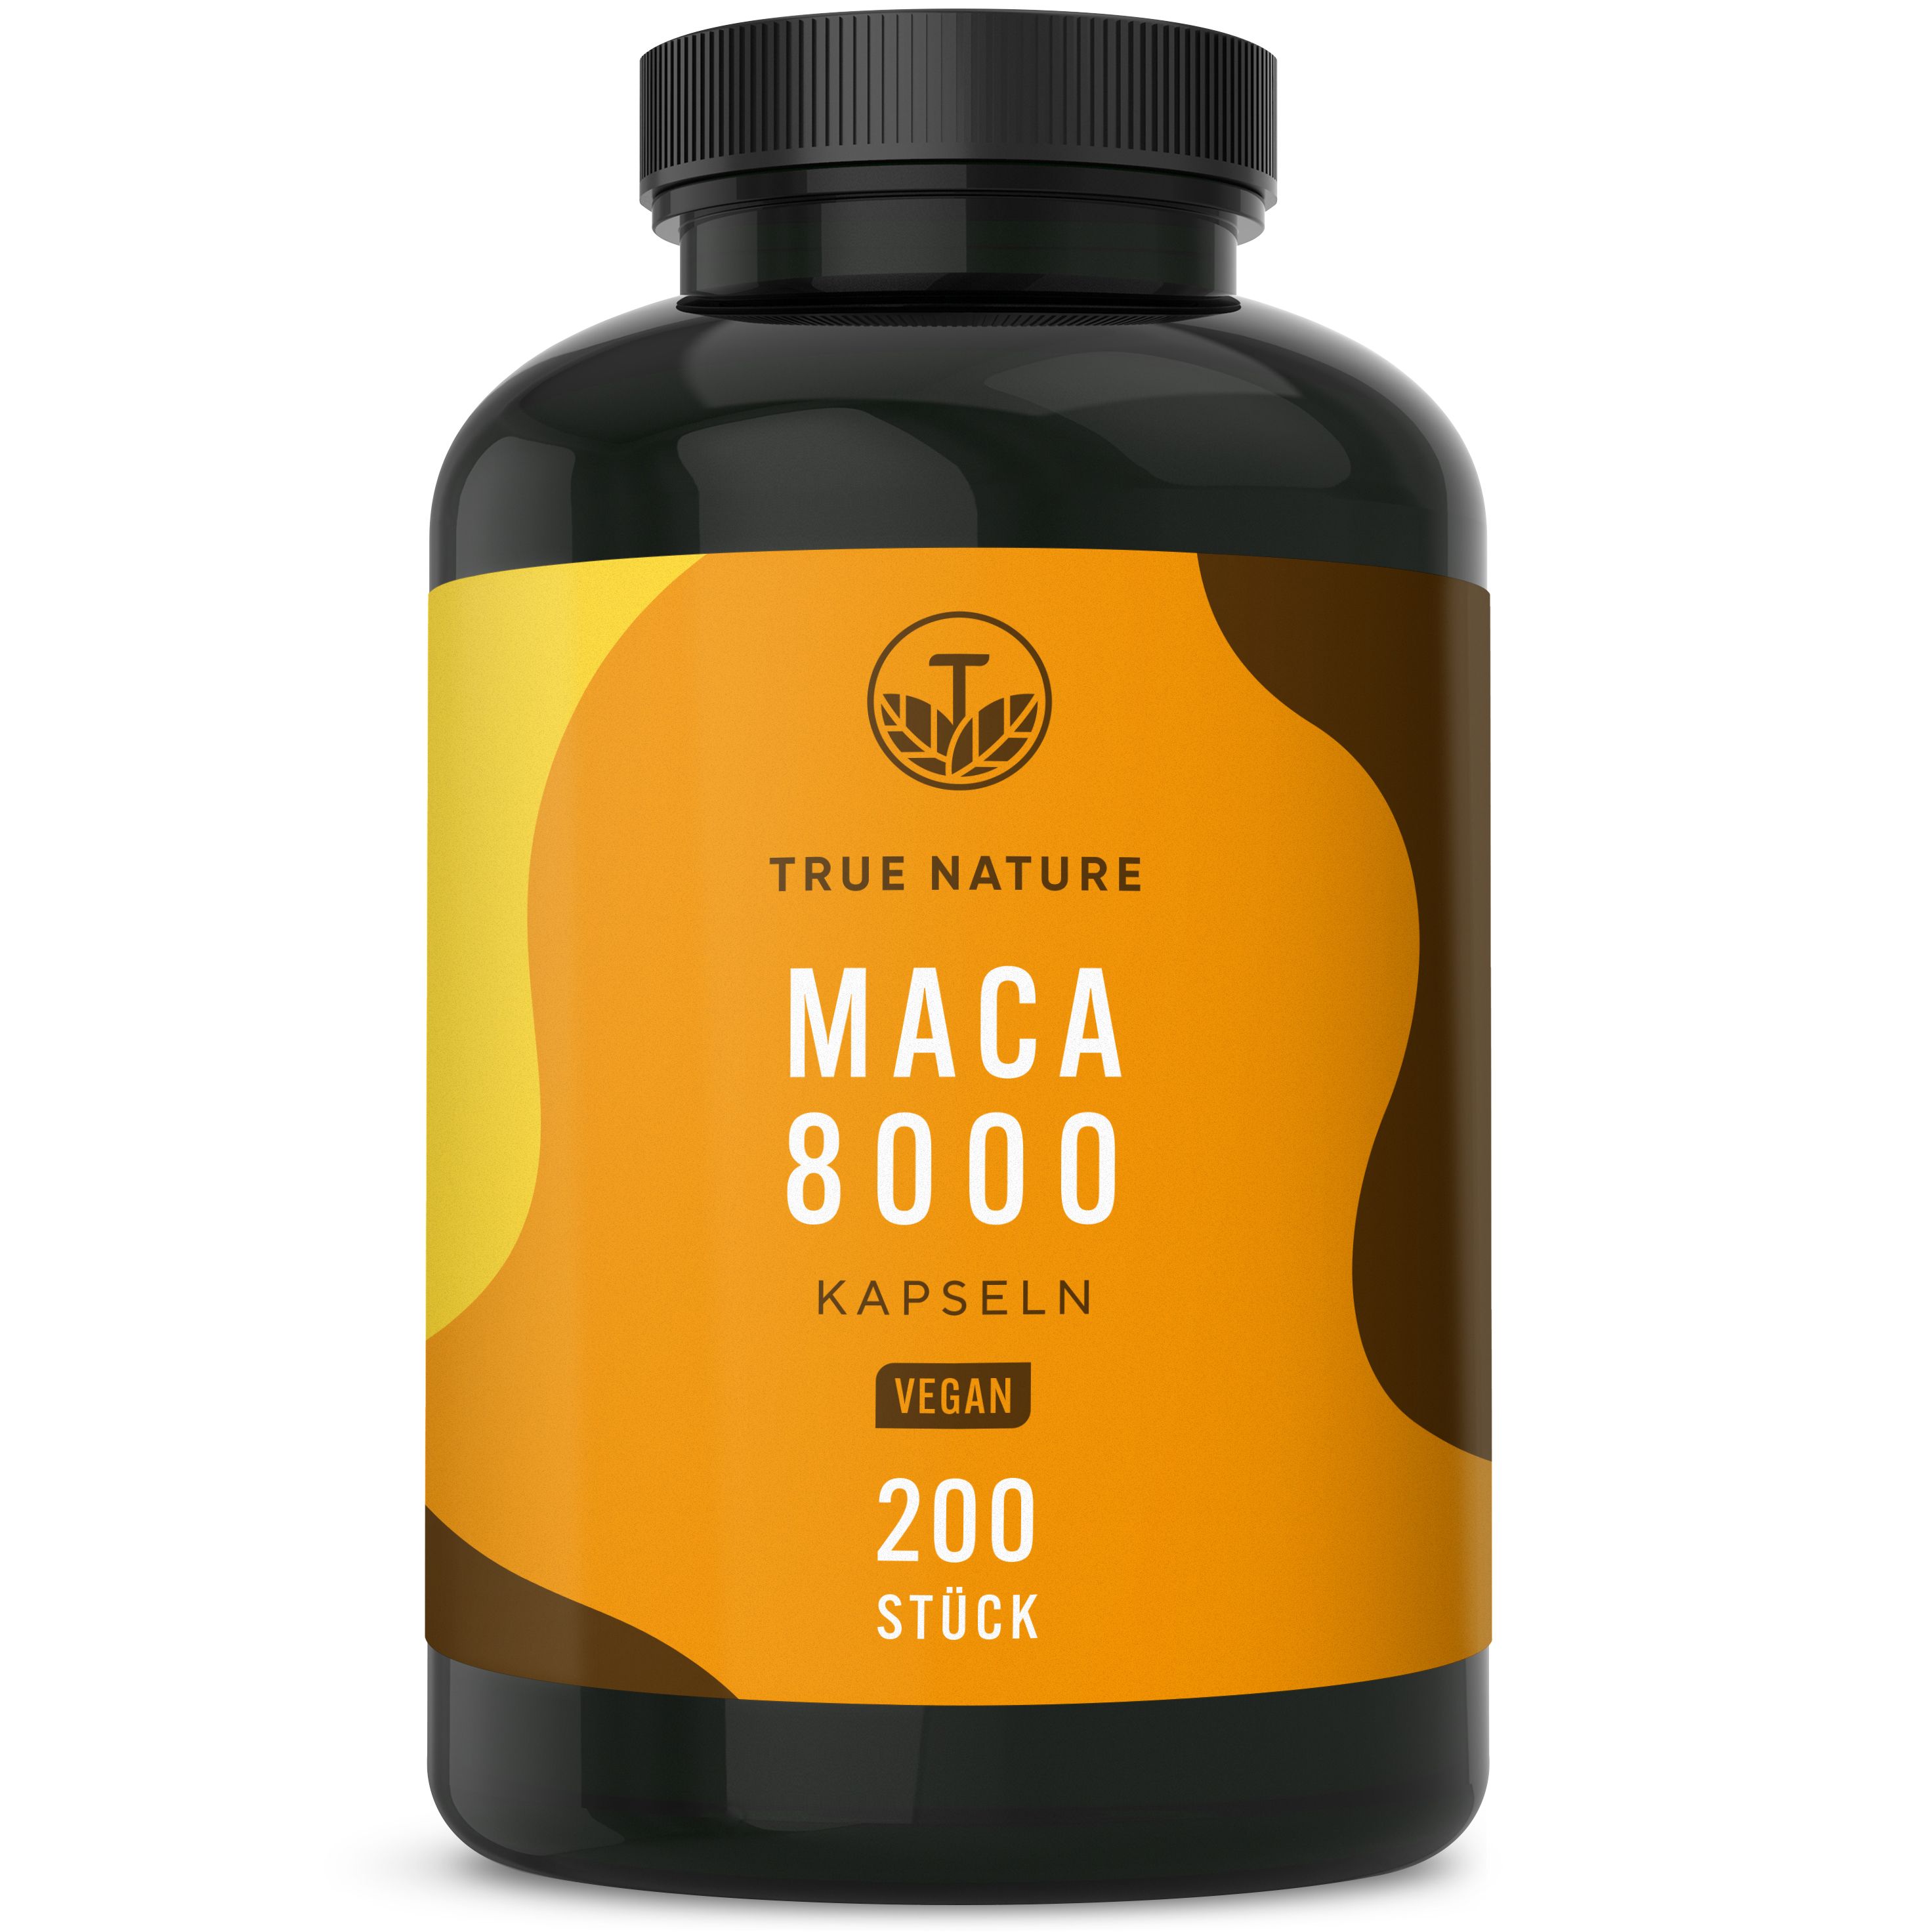 TRUE NATURE® Maca 8000 Hochdosiert - Premium 20:1 Extrakt: entspricht 24.000mg Maca PRO Tagesdosis